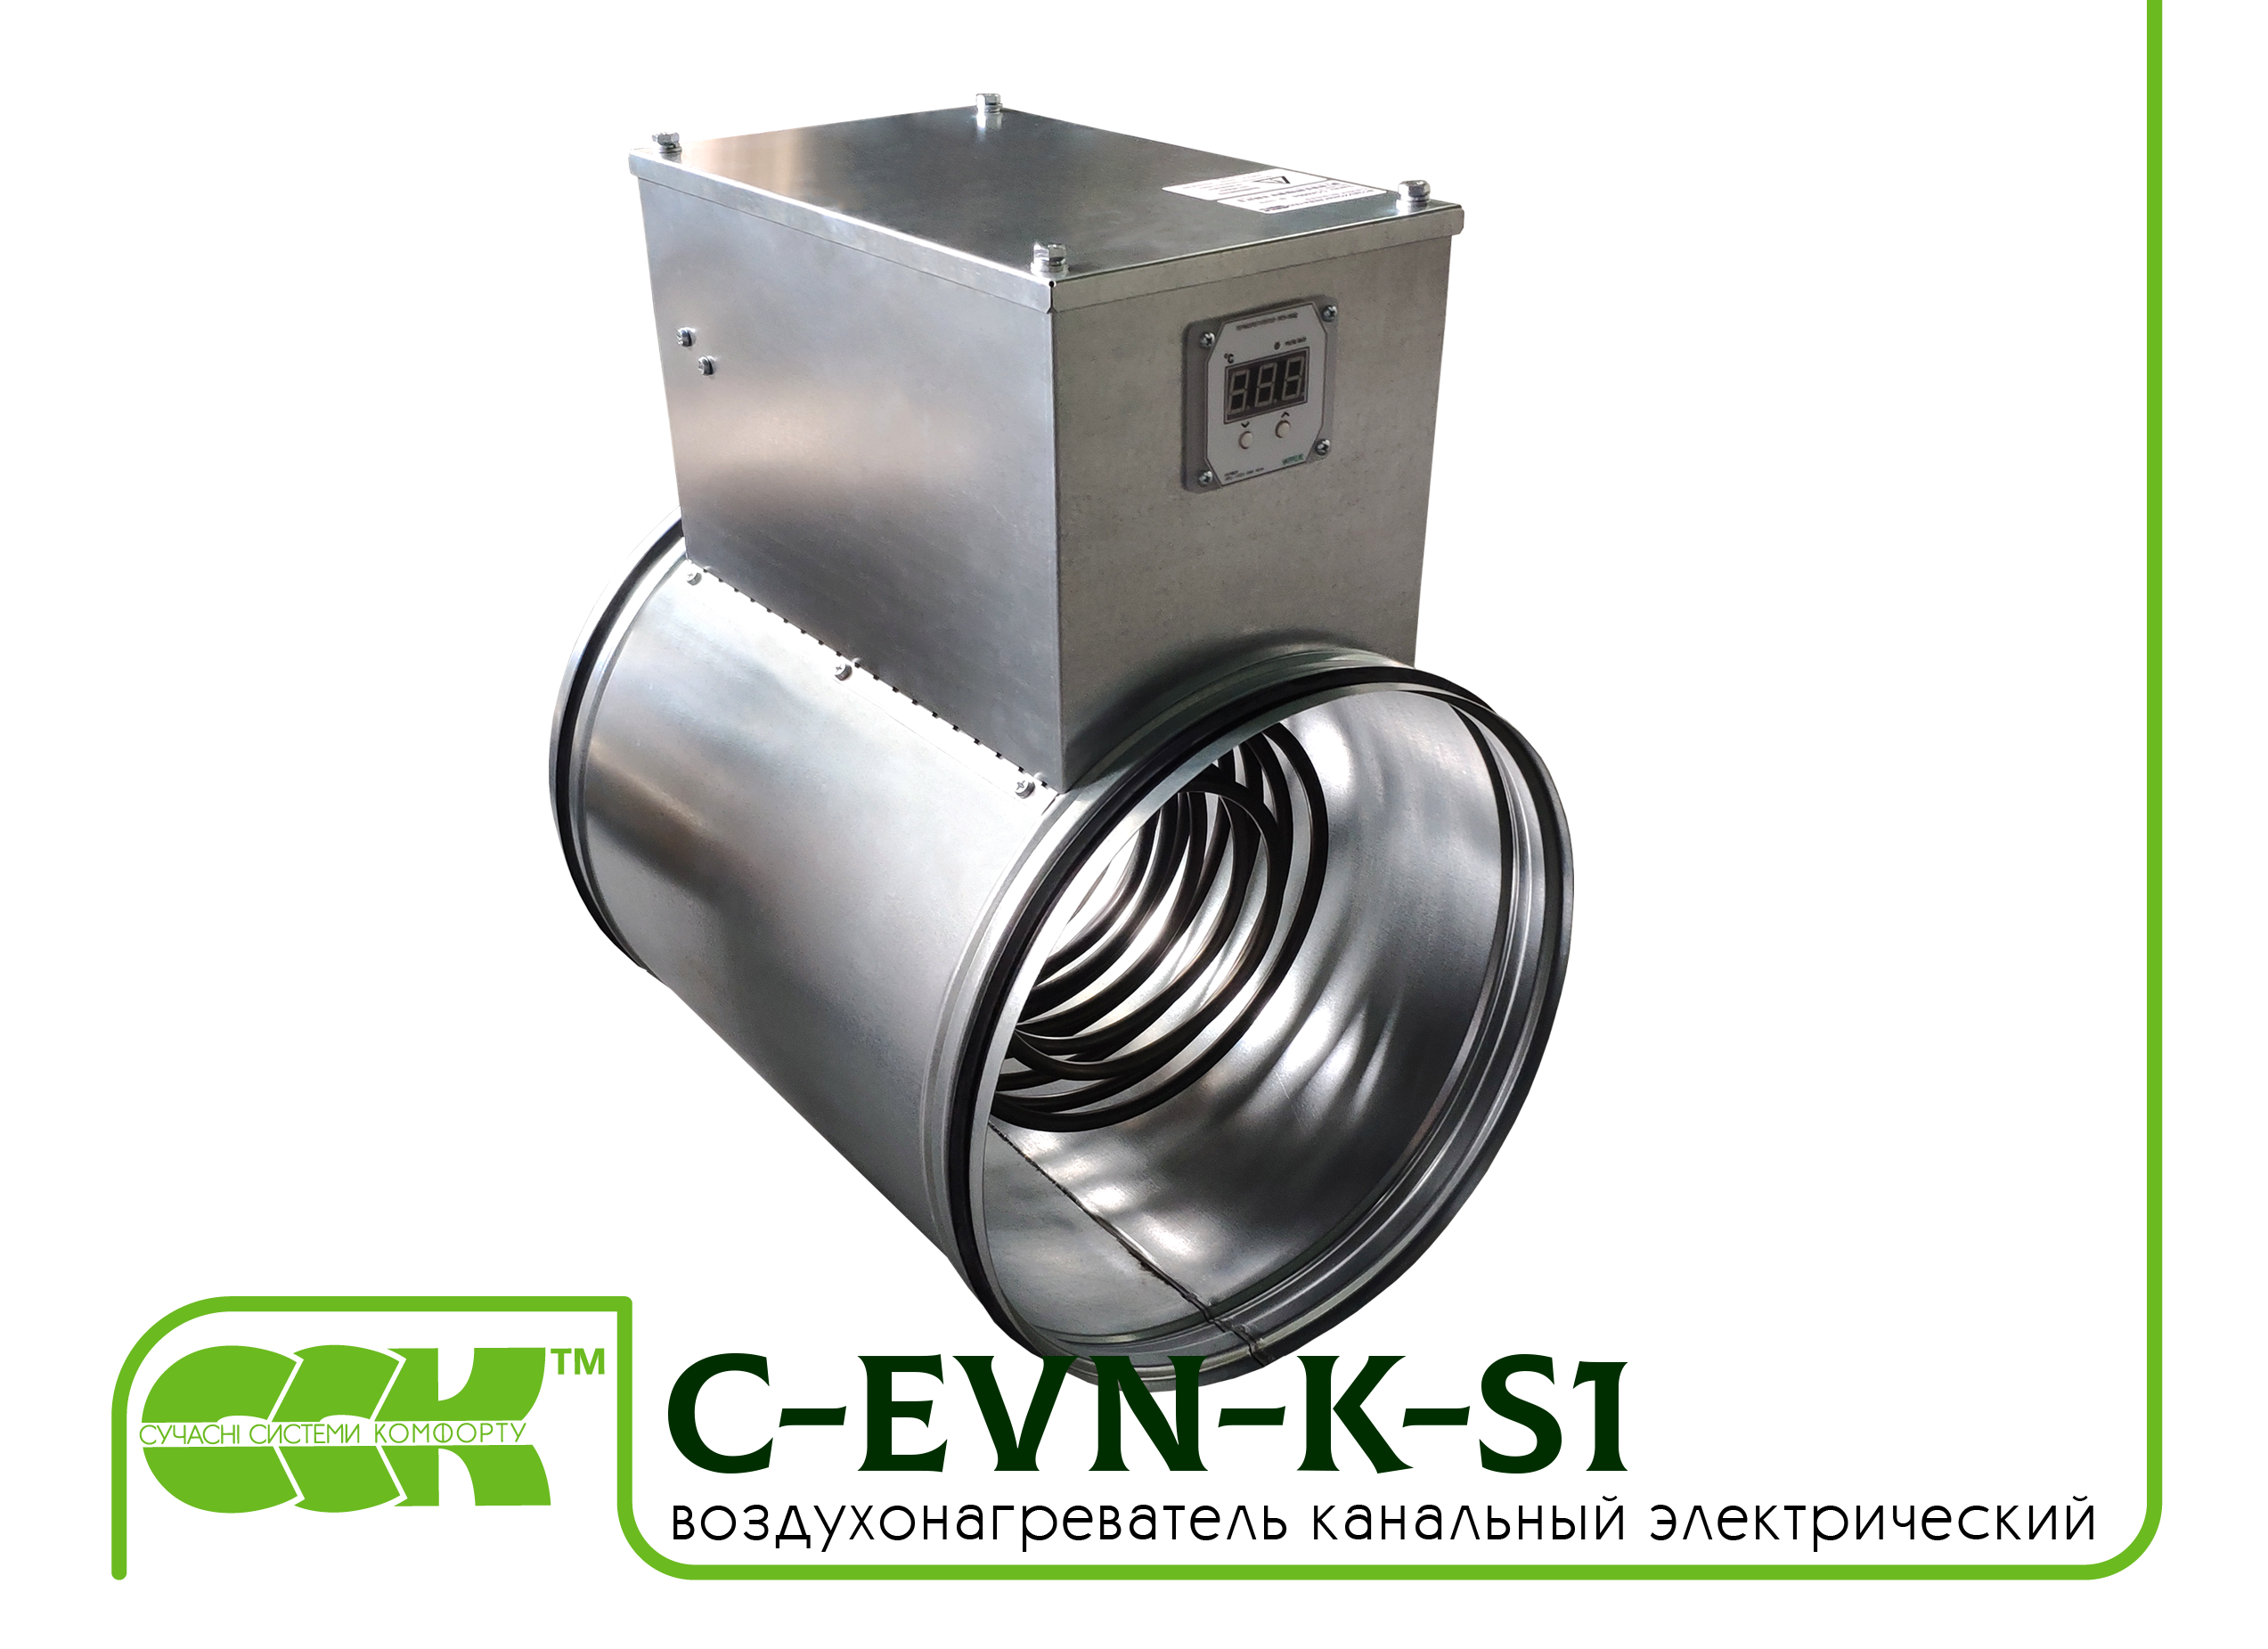 Воздухонагреватель канальный электрический для круглых каналов C-EVN-K-S1-160-4,5